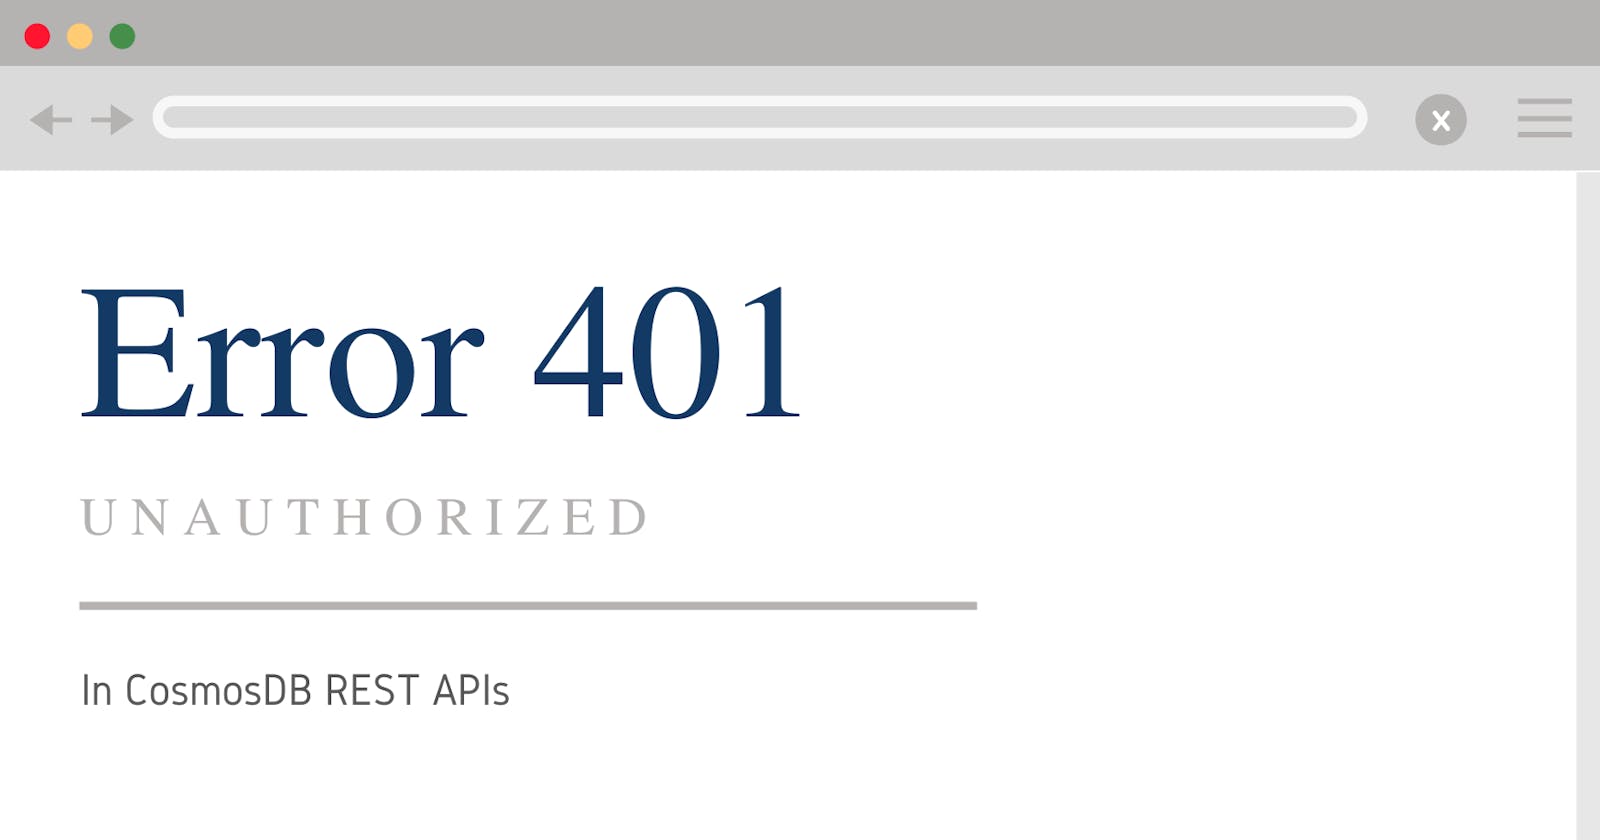 401 Unauthorized error when using CosmosDB REST APIs